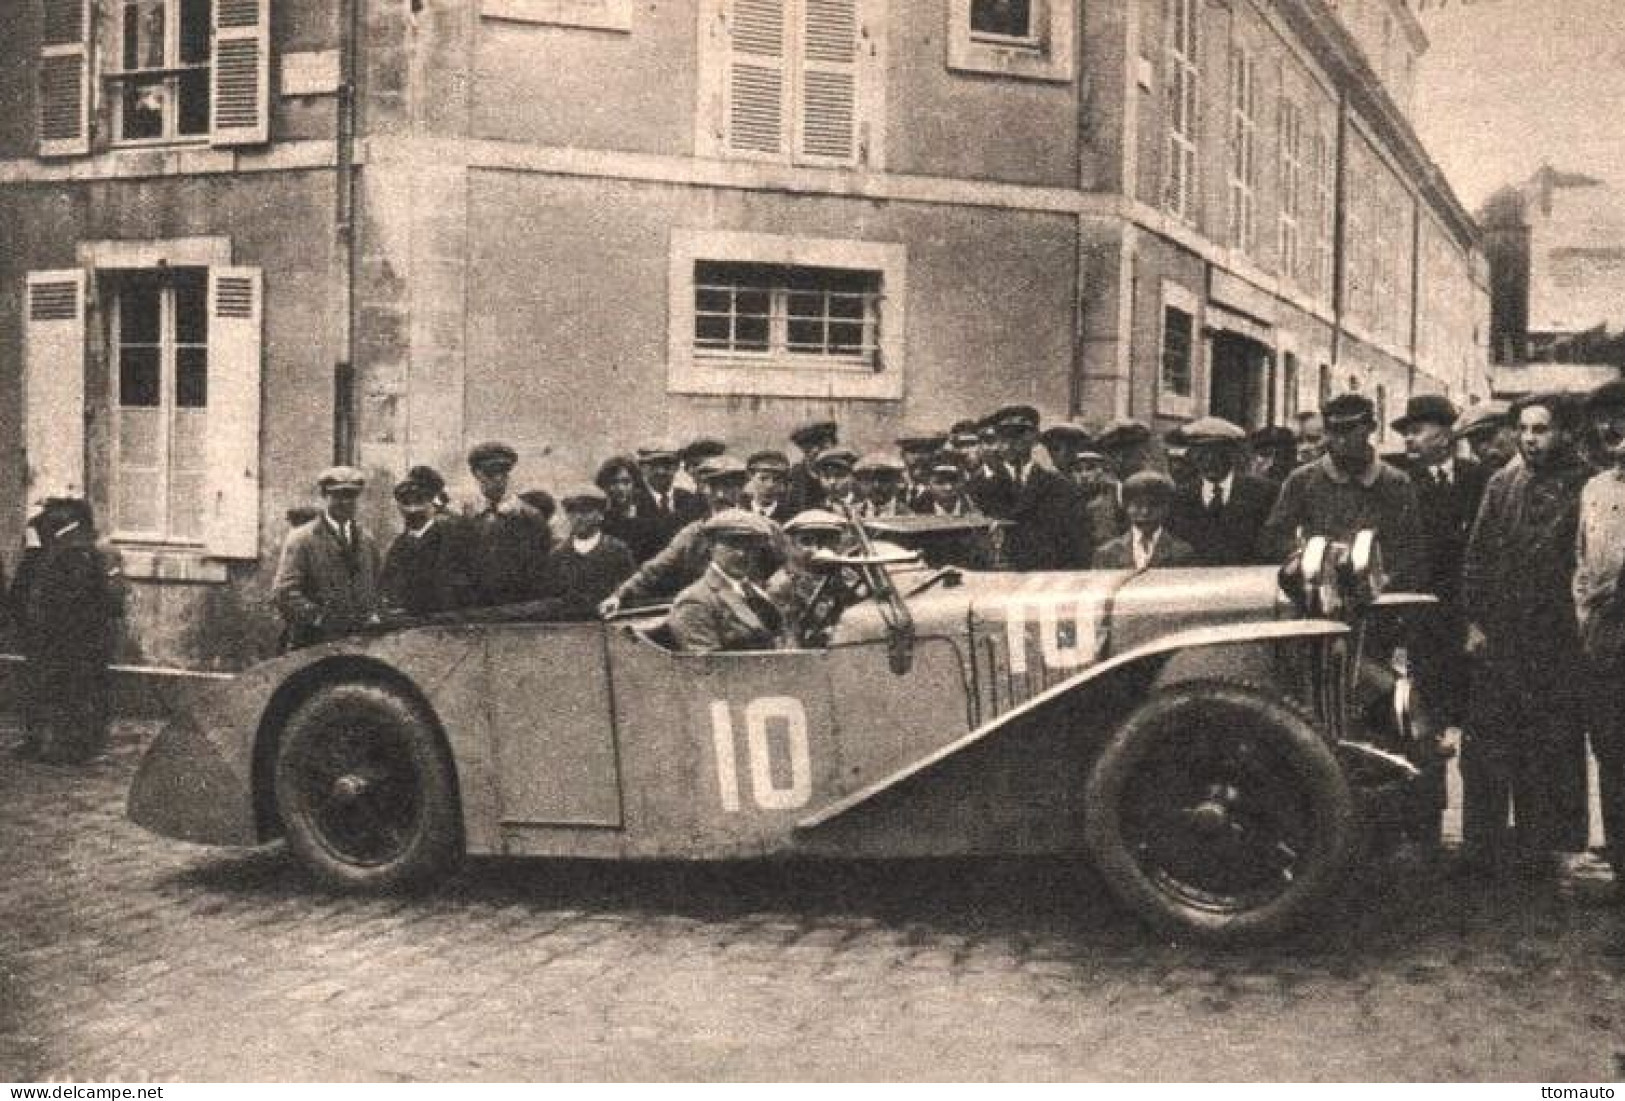 Aries S GP2 Surbaissée  - Pilotes: Robert Laly/Jean Chassagne - Concurrents Francaises Le Mans 1926  -  15x10cms PHOTO - Le Mans